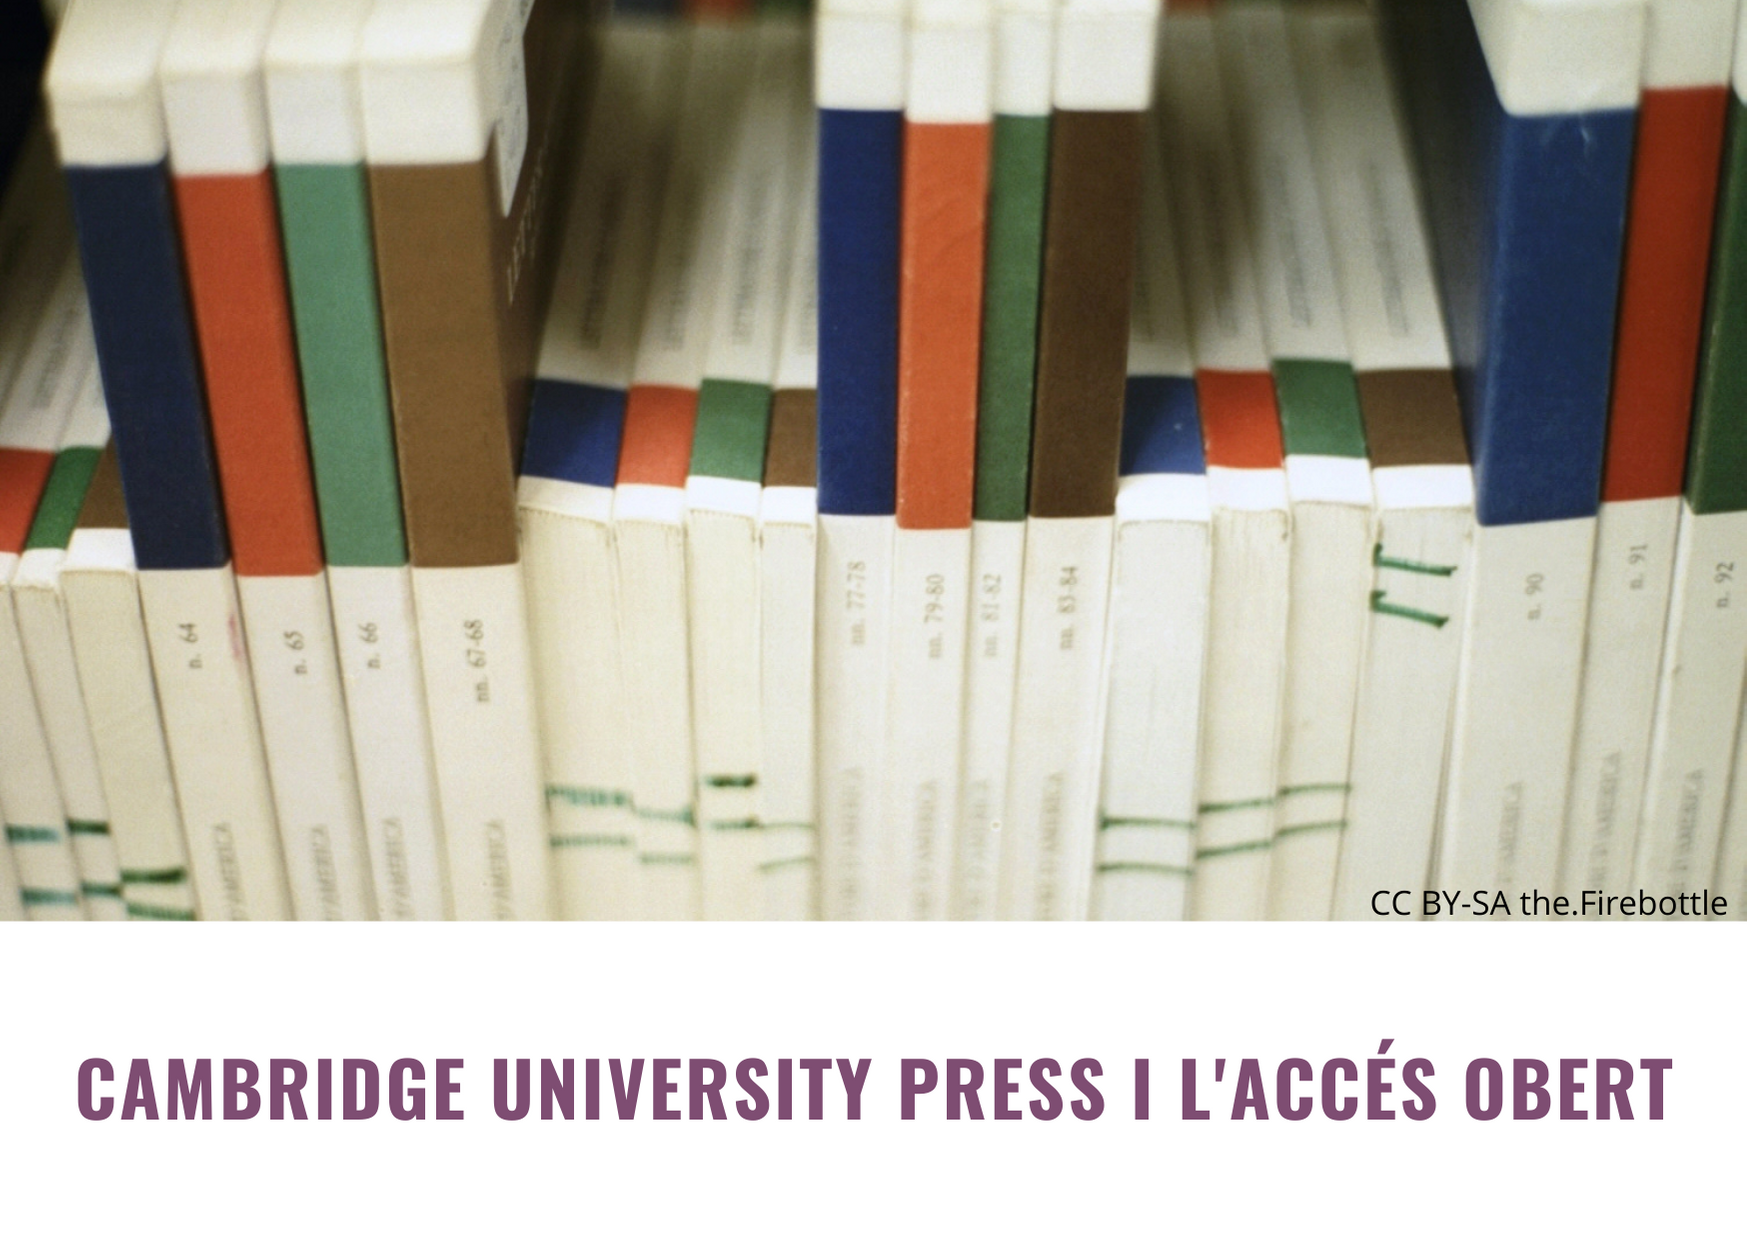 Cambridge University Press i accés obert